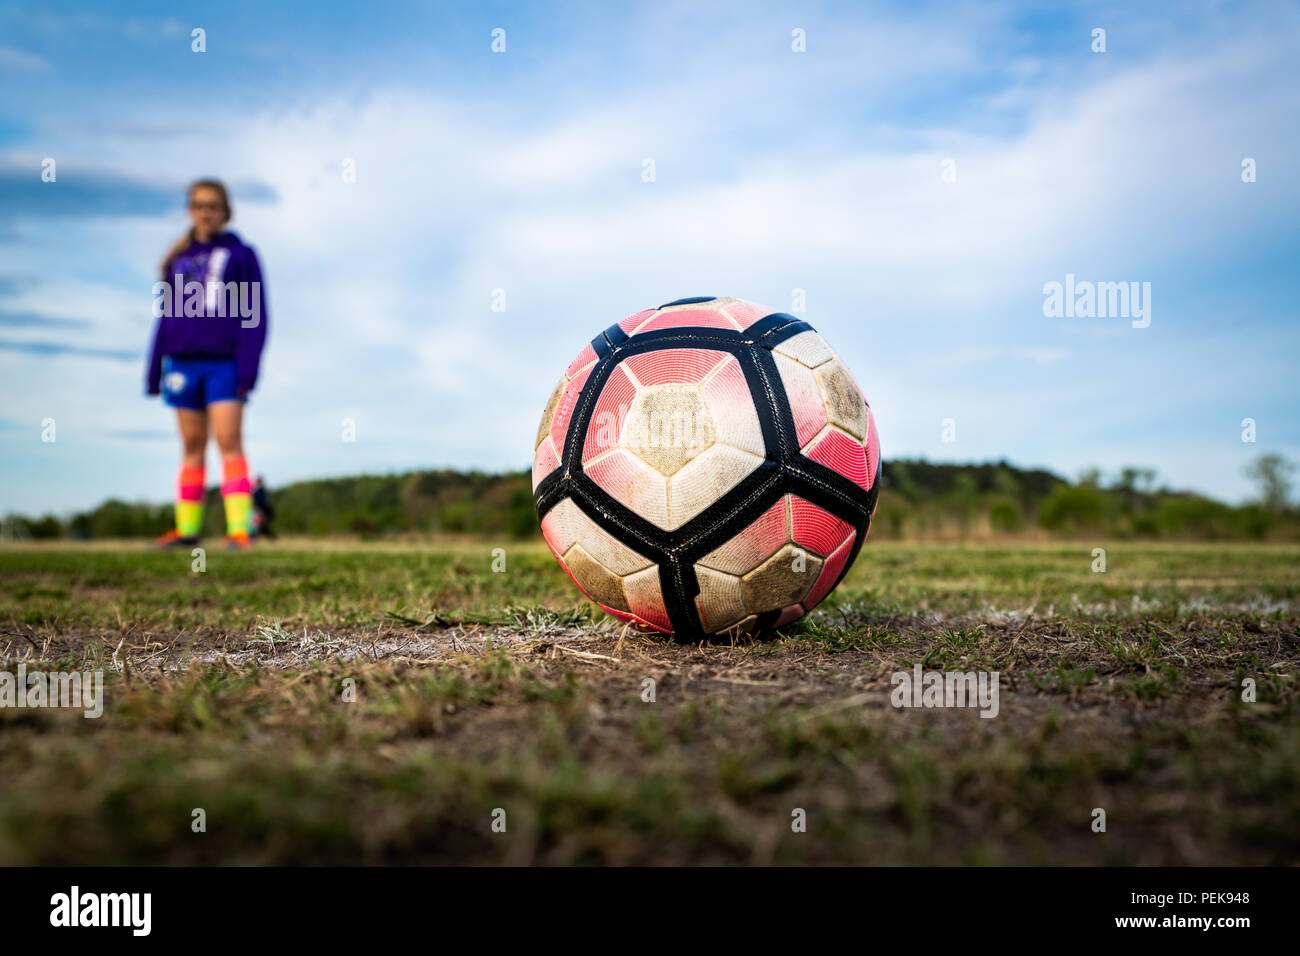 Une jeune fille se tient derrière un ballon de soccer, la préparation d'un coup de pied. Concepts : youth sports, athlète, l'accent, la préparation, la pratique, l'intensité, l'aspiration, Banque D'Images